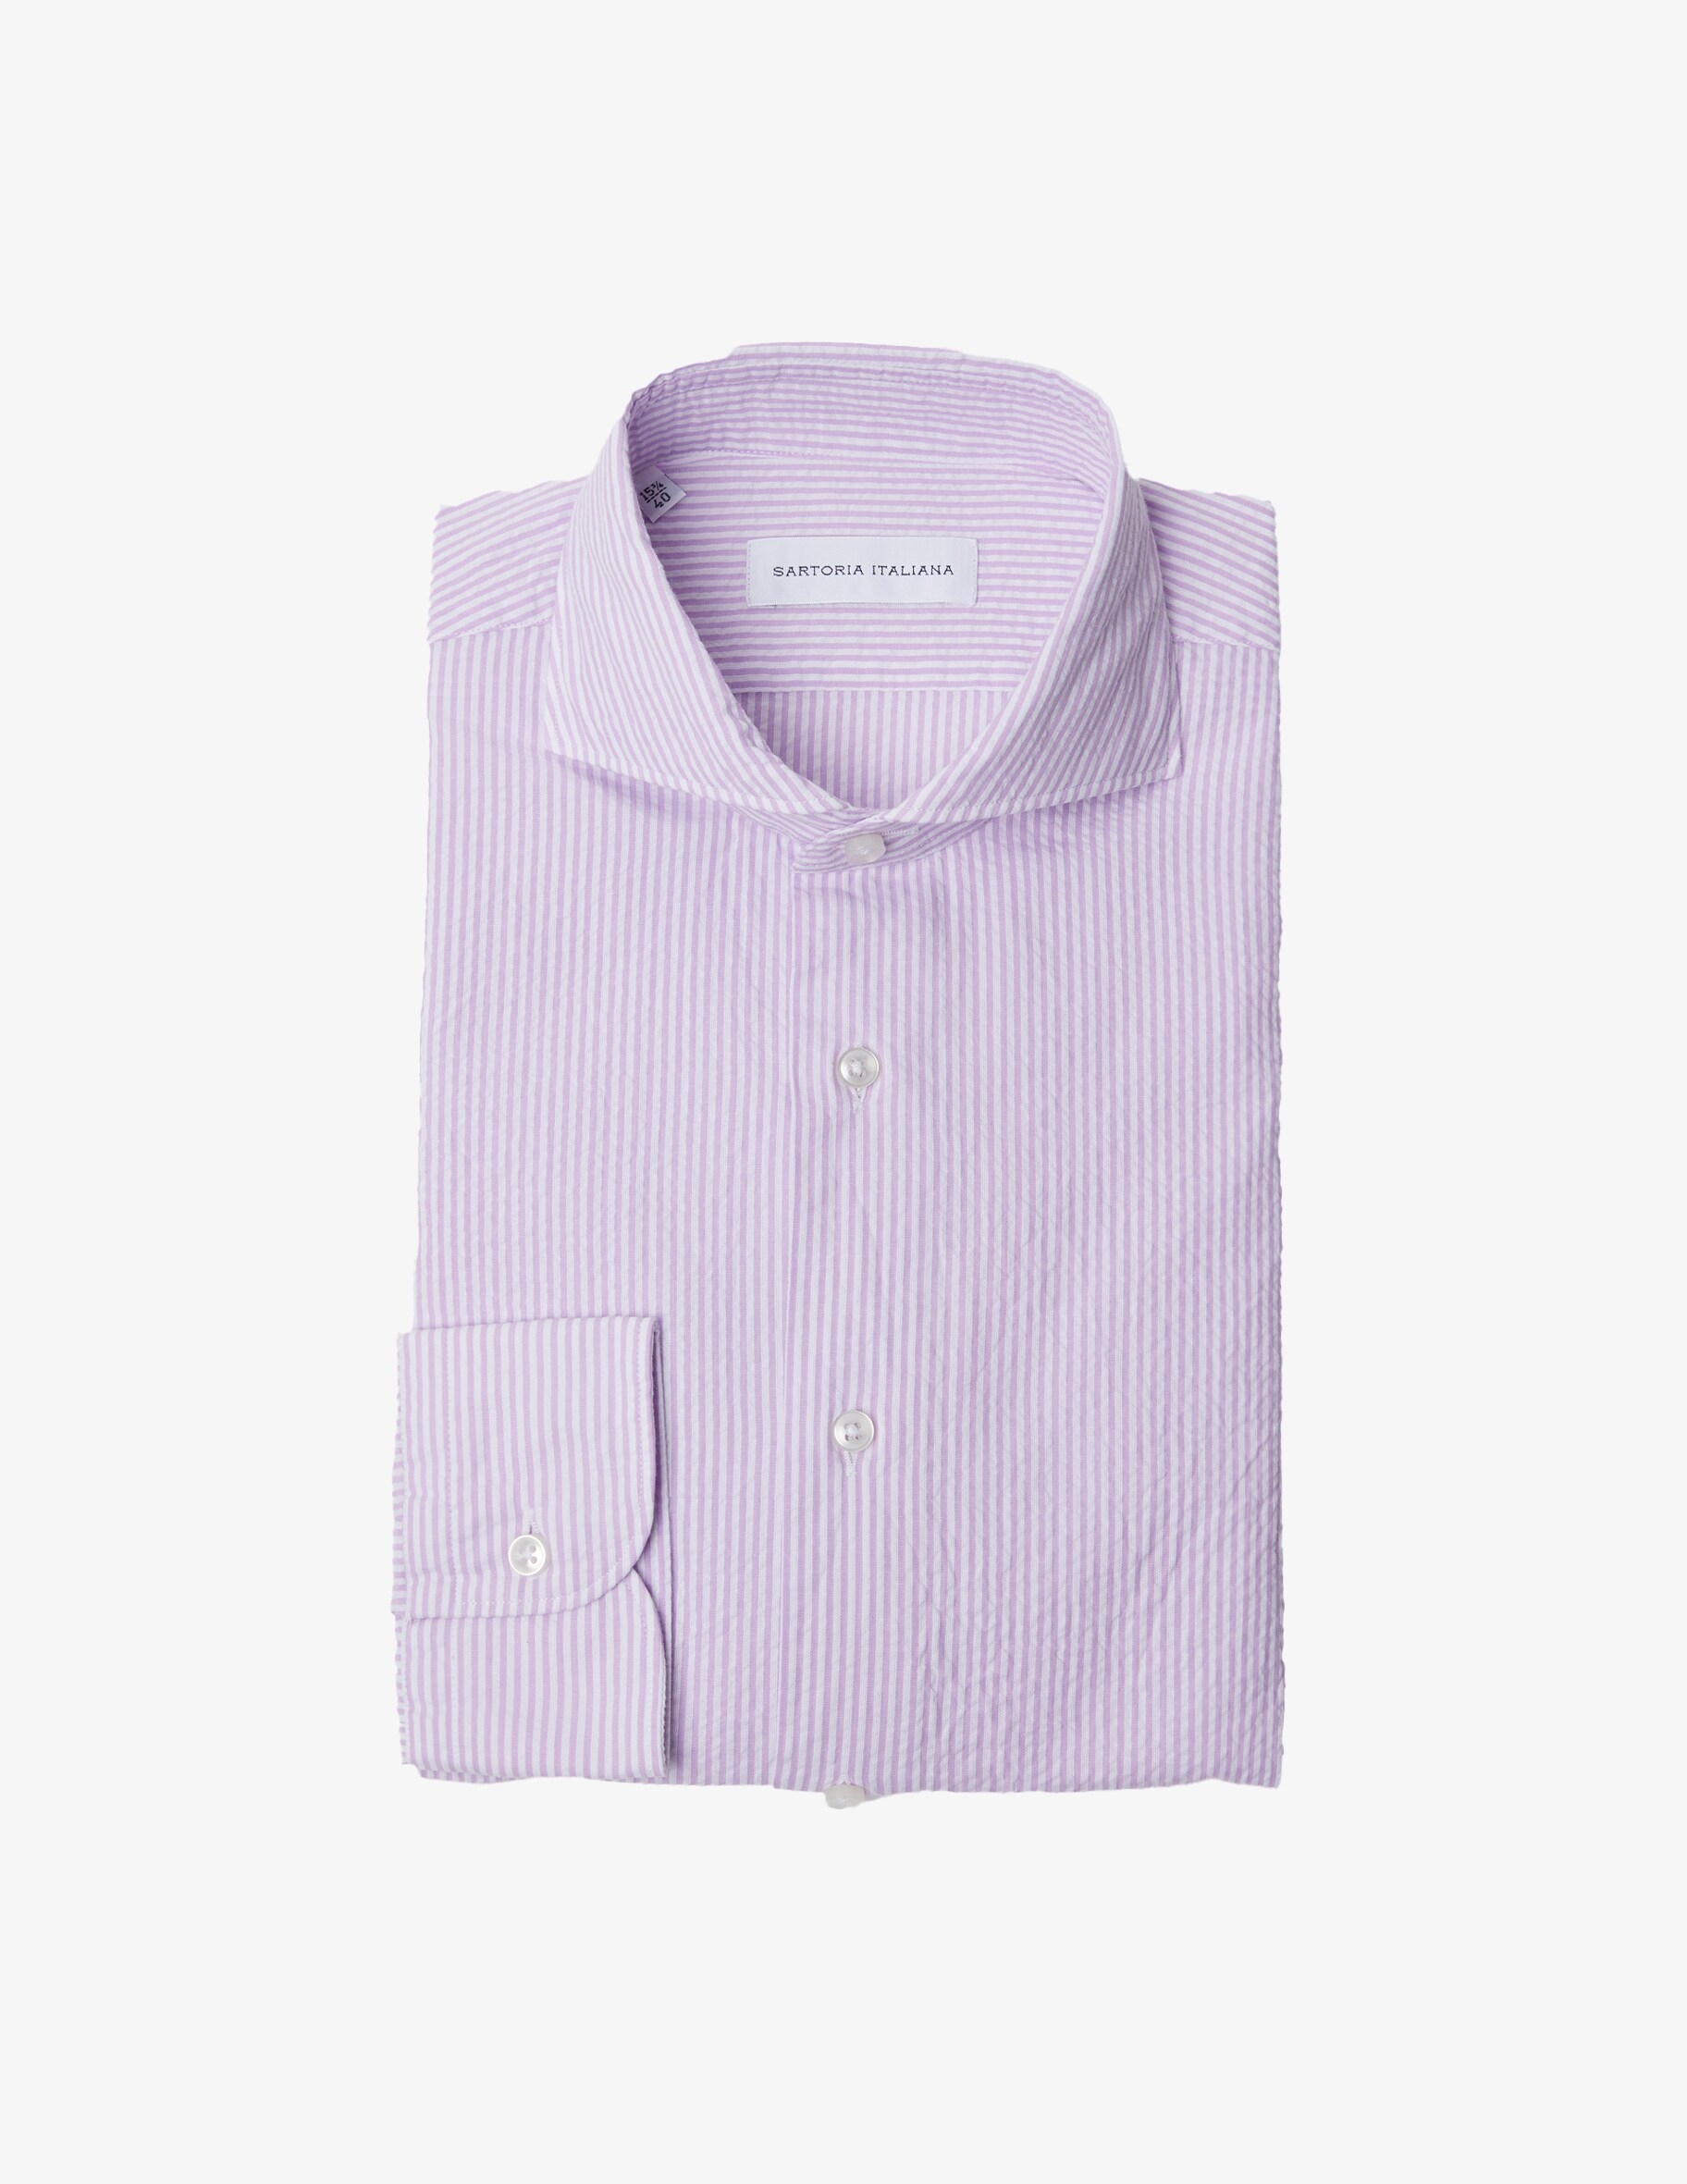 Полосатая рубашка в современном стиле из сирсакера Sartoria Italiana, фиолетовый